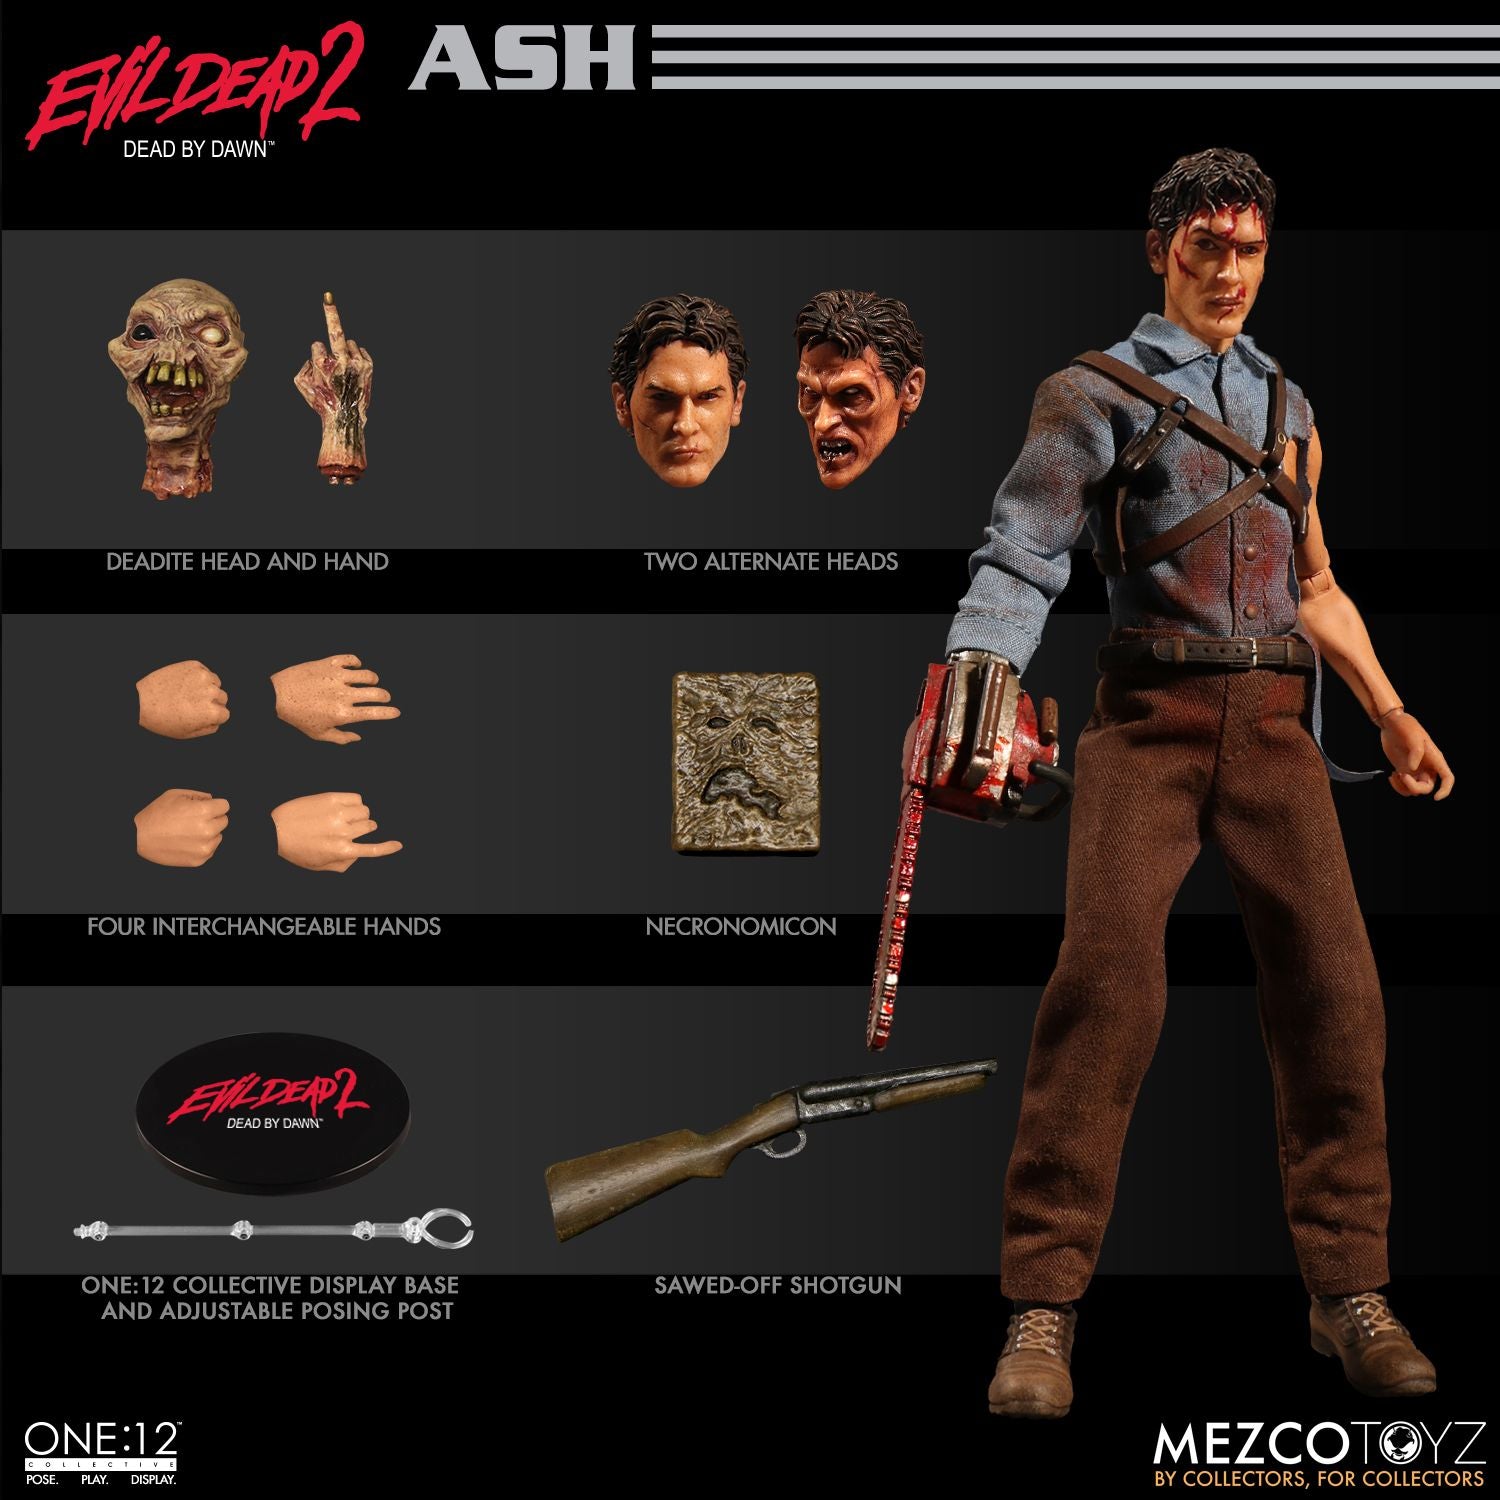 Mezco Toyz ONE:12 Collective: Ash Evil Dead 2 Action Figure